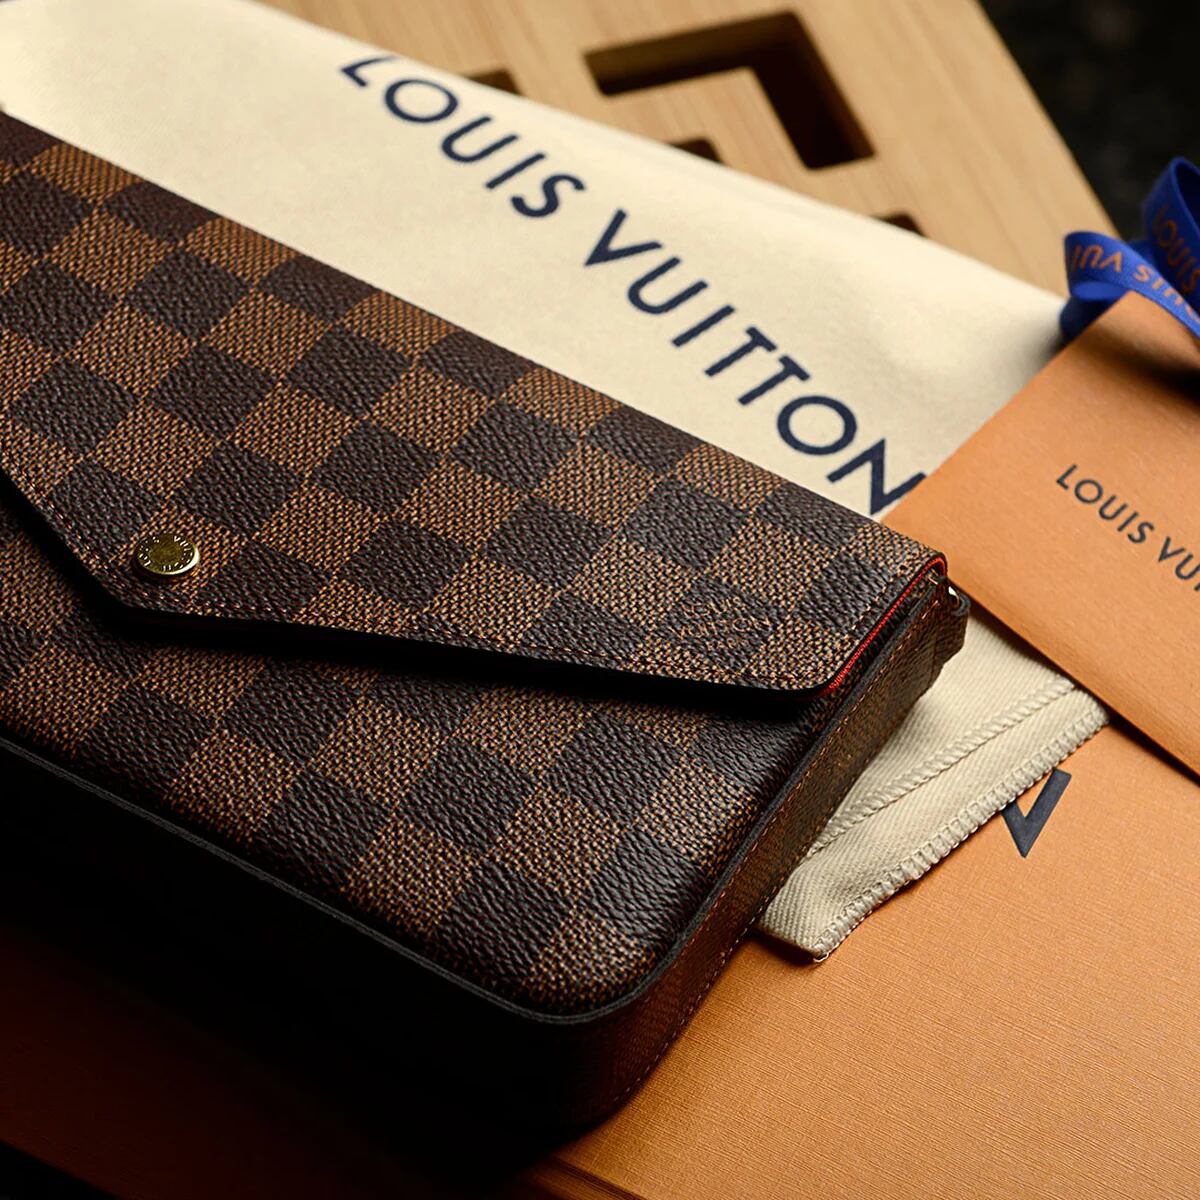 De Louis Vuitton a Prada: cuáles son las marcas de lujo más valiosas del  mundo - Infobae